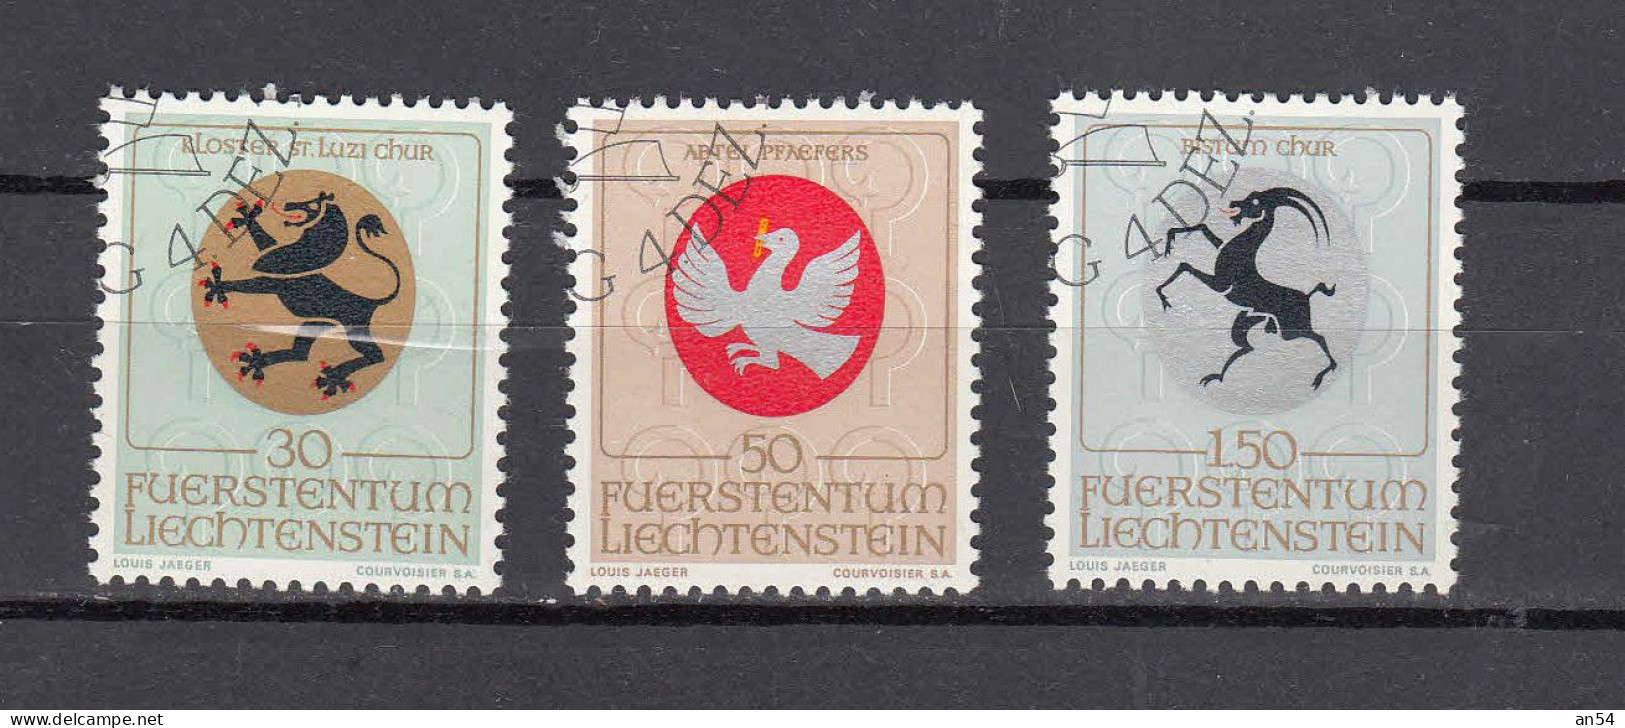 LIECHTENSTEIN 1969     N° 453 à 455   OBLITERES   CATALOGUE  ZUMSTEIN - Used Stamps